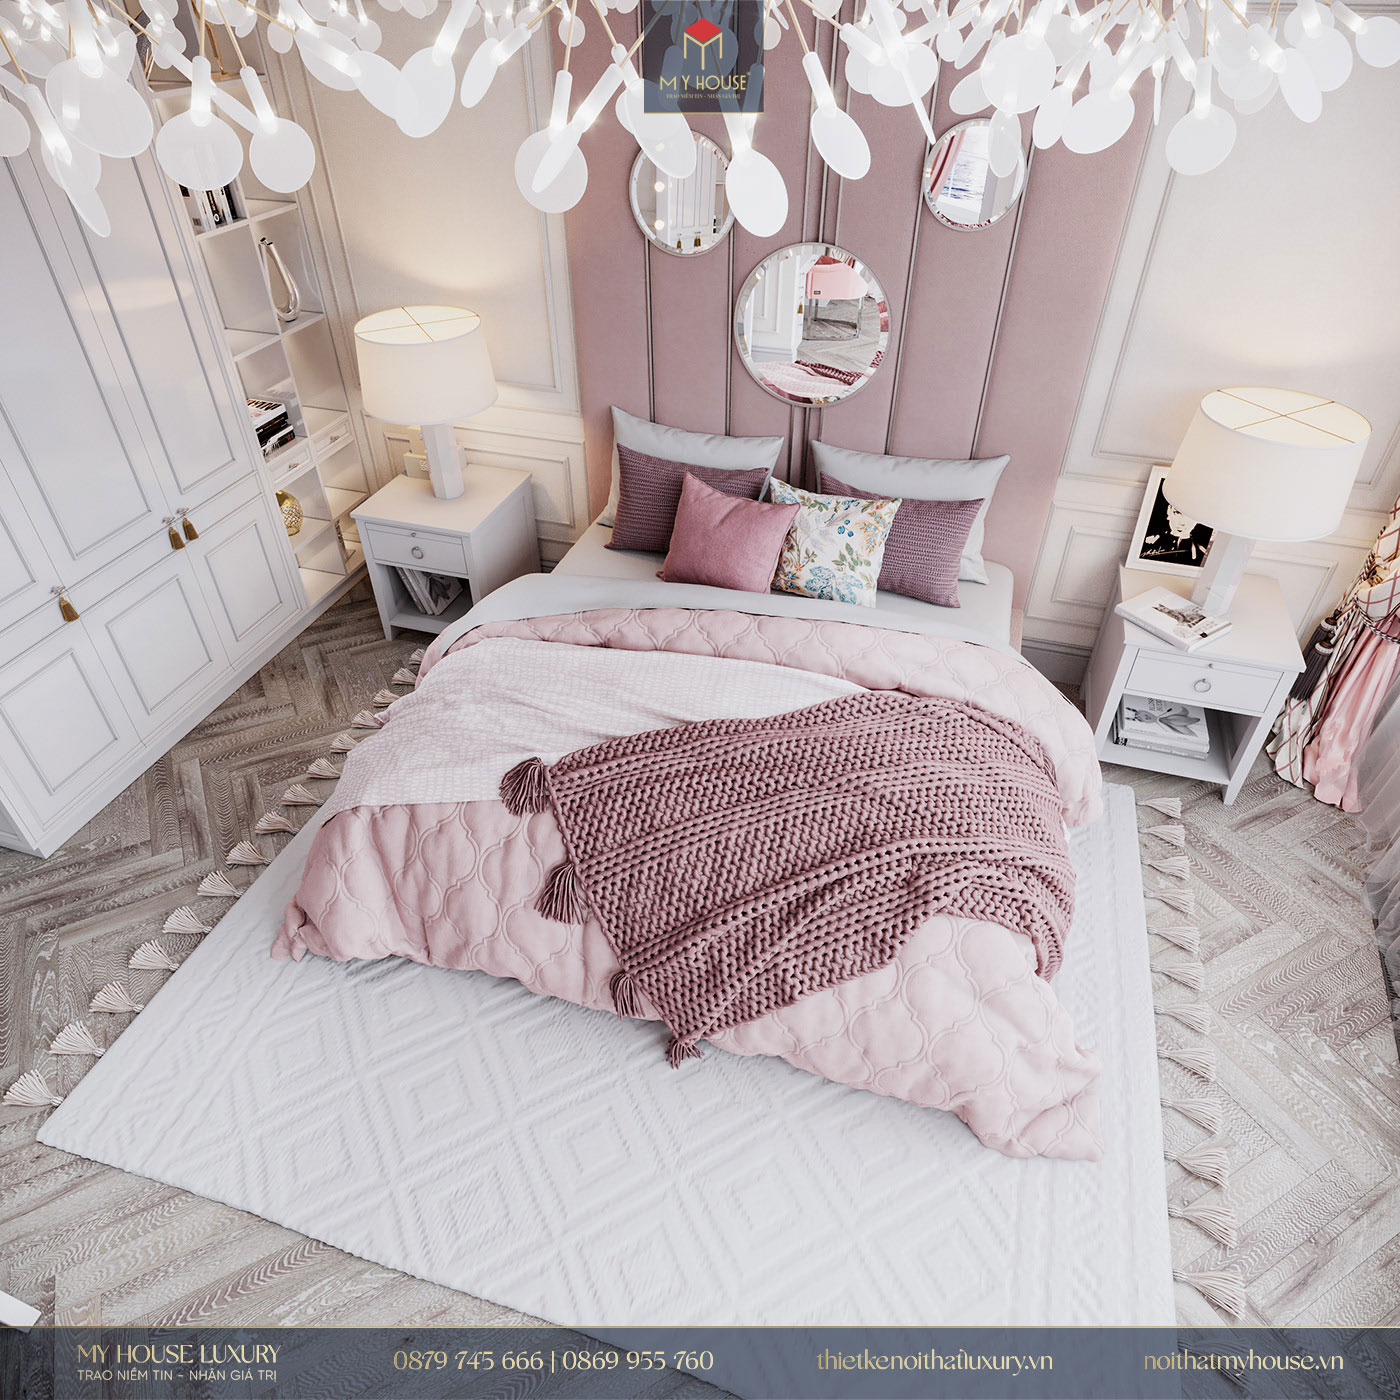 Thiết kế phòng ngủ sang trọng, tinh tế với tone màu hồng - trắng